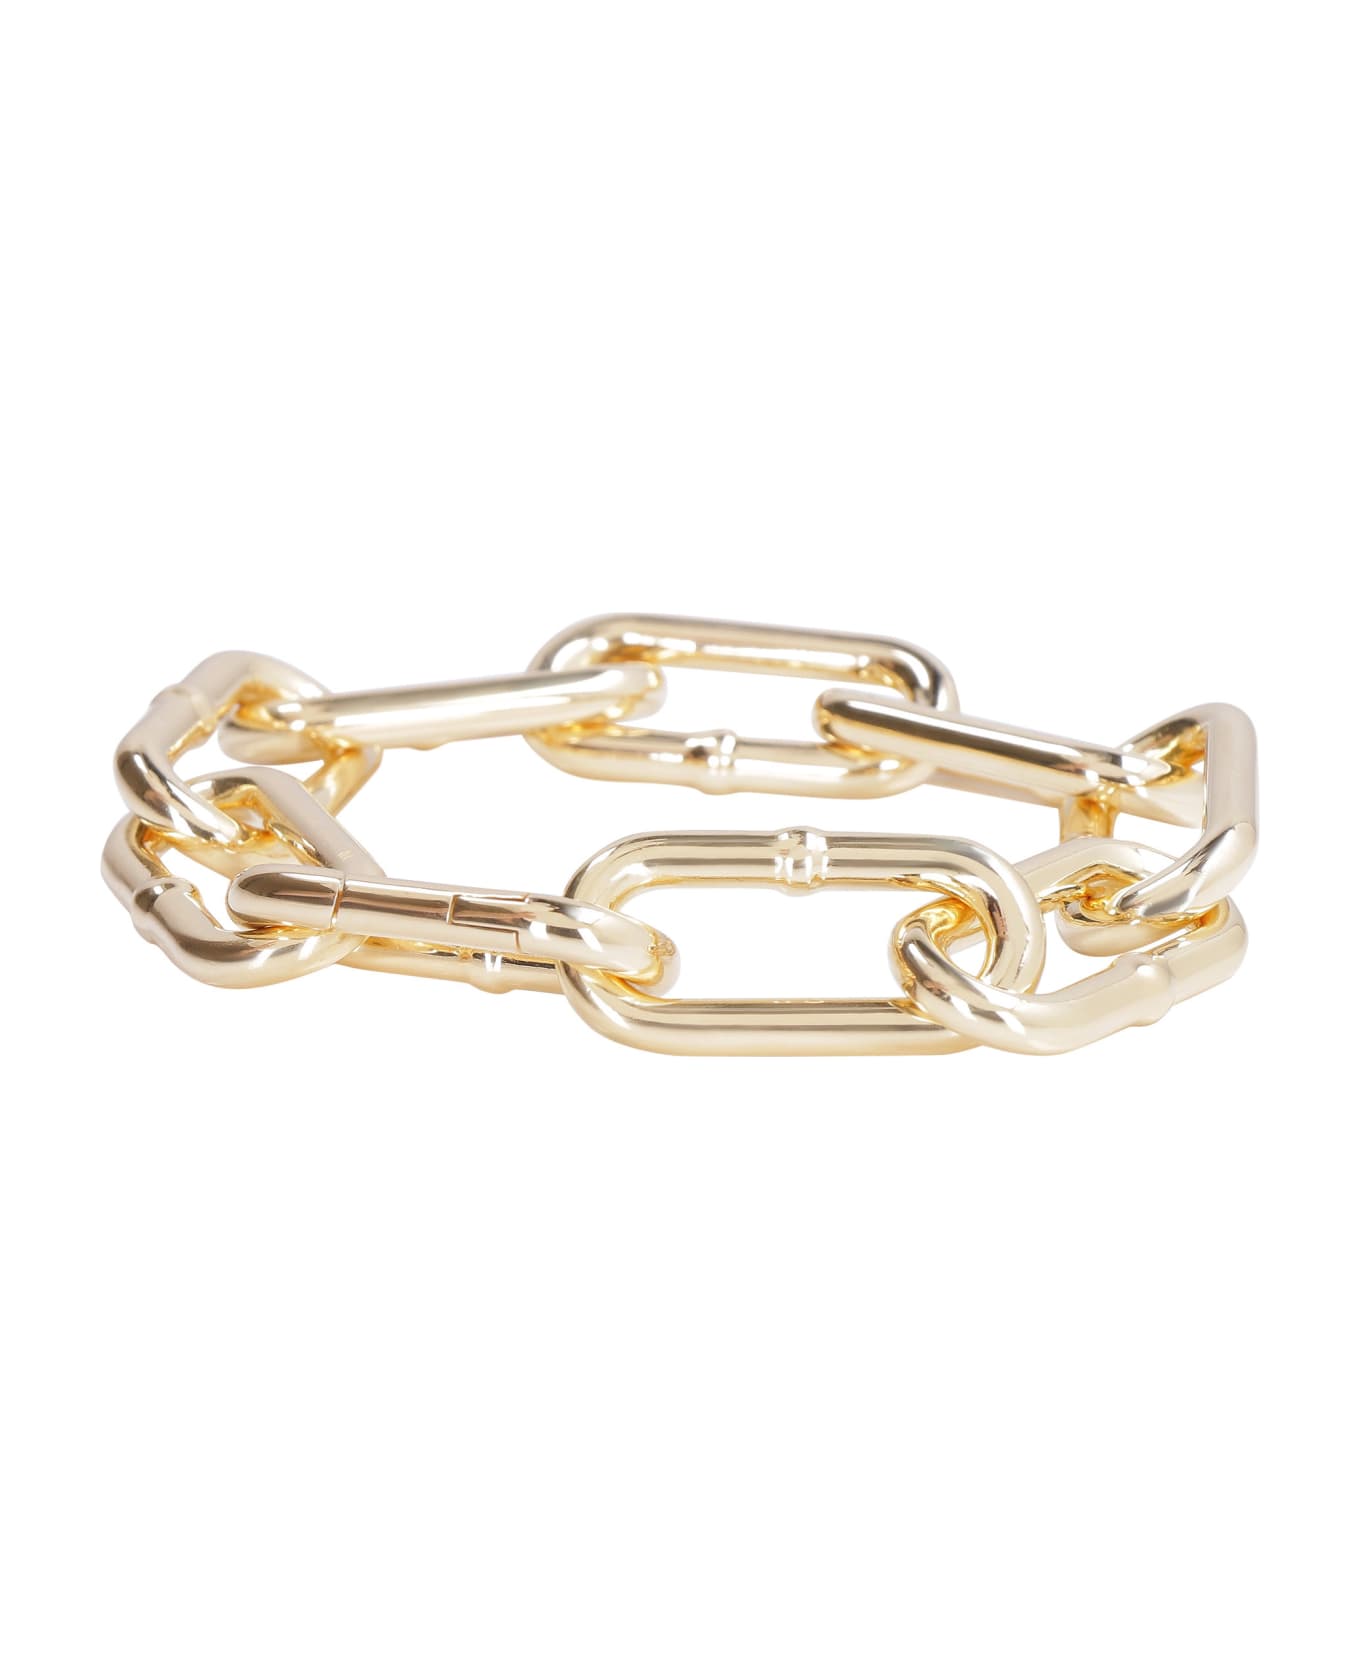 Bottega Veneta Plated Silver Chain Bracelet - Gold ブレスレット